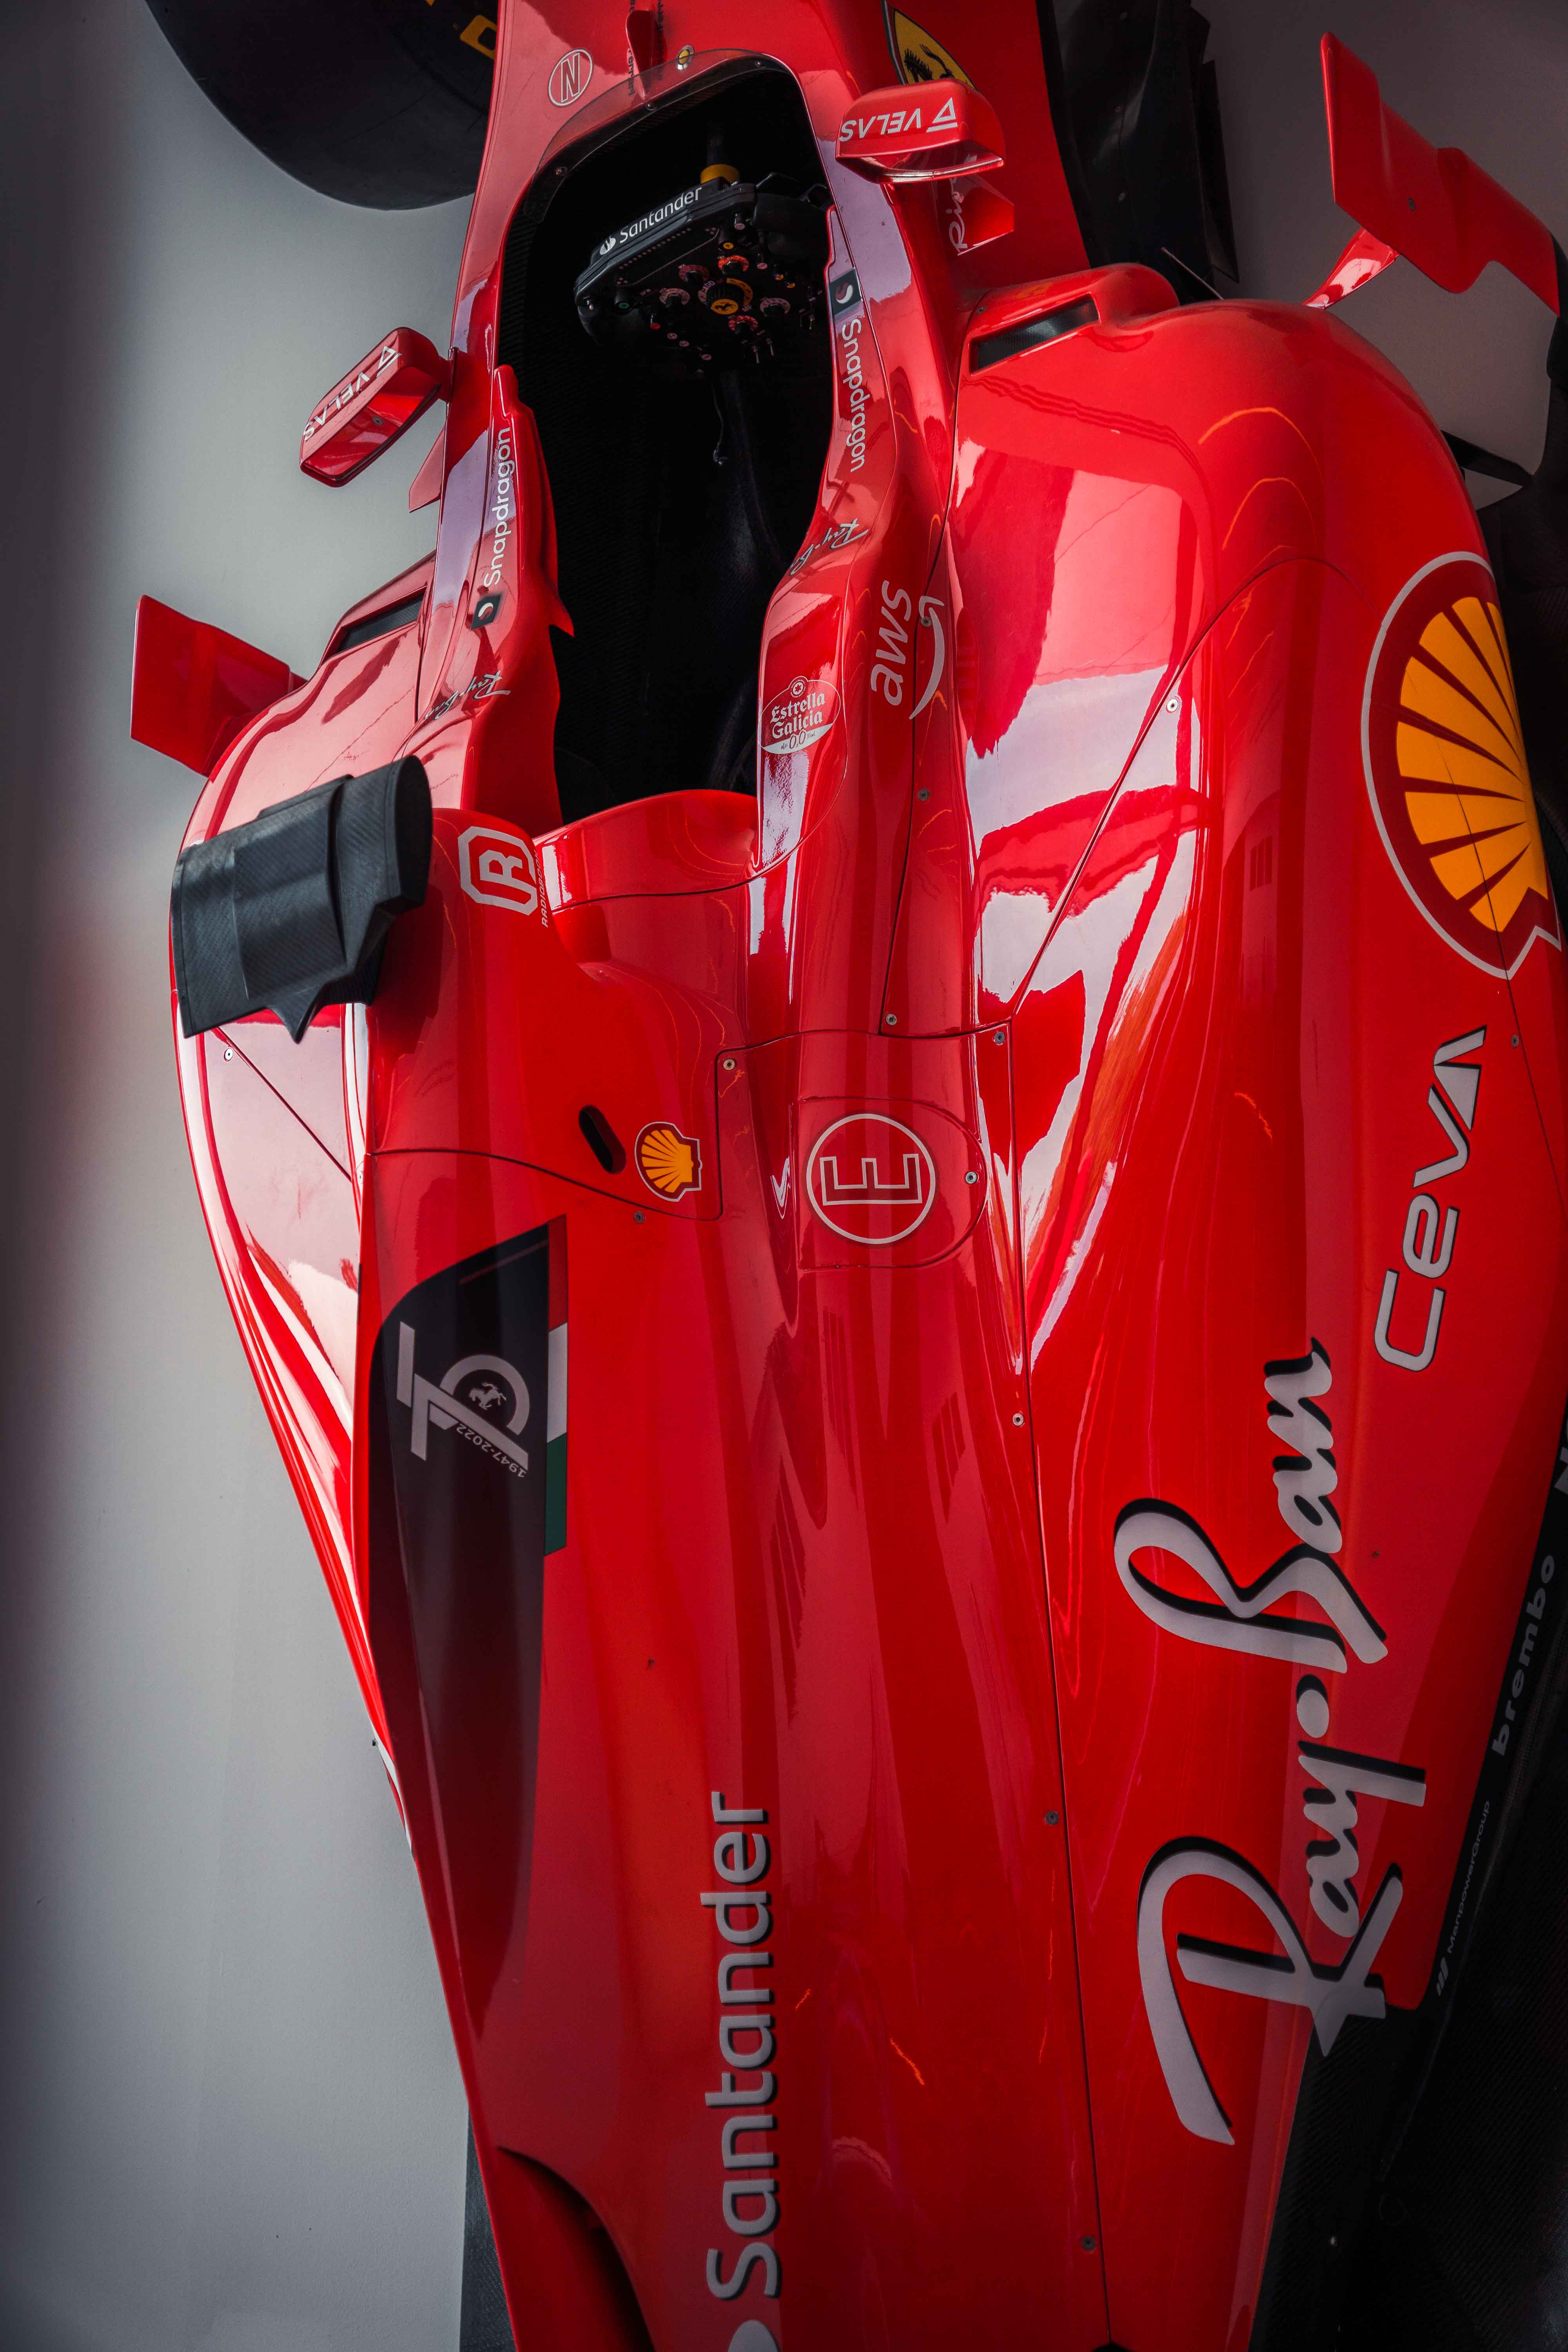 Ferrari Formula 1 car on the wall